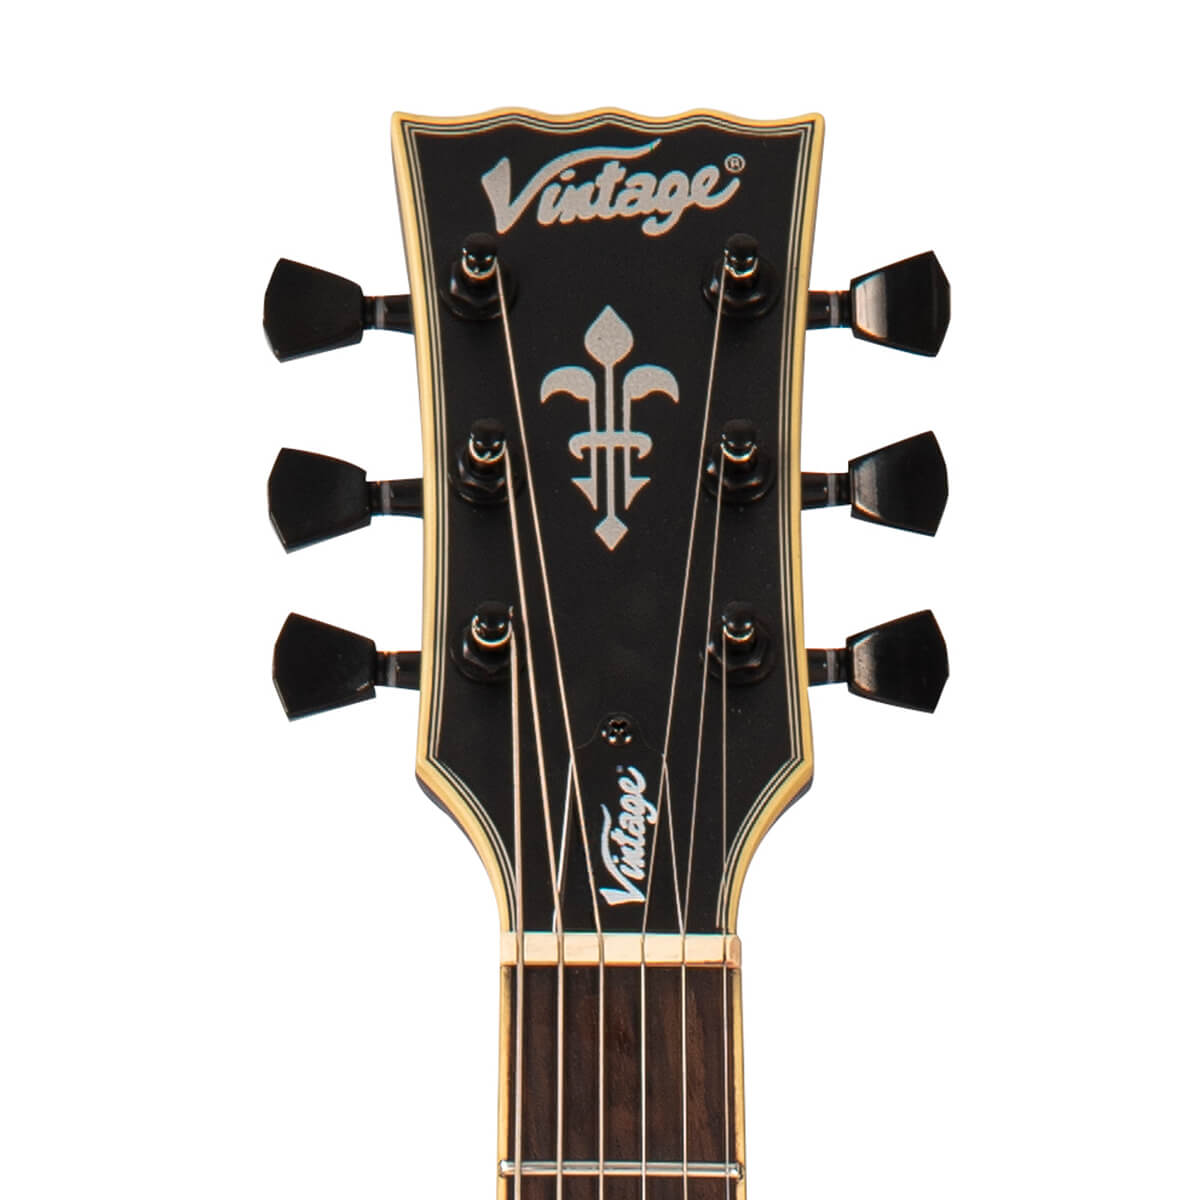 Vintage V100VMX, photo credit: Vintage Guitars